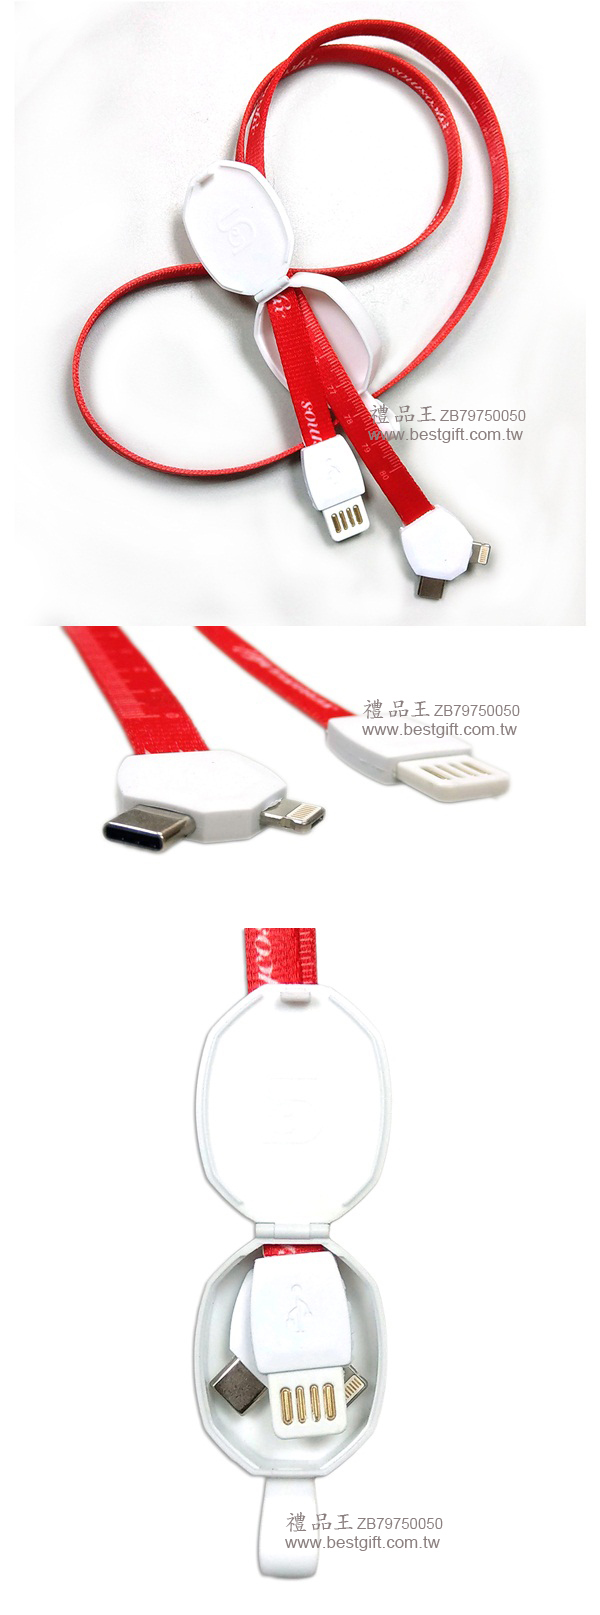 二合一USB數據充電線識別證帶  商品貨號: ZB79750050